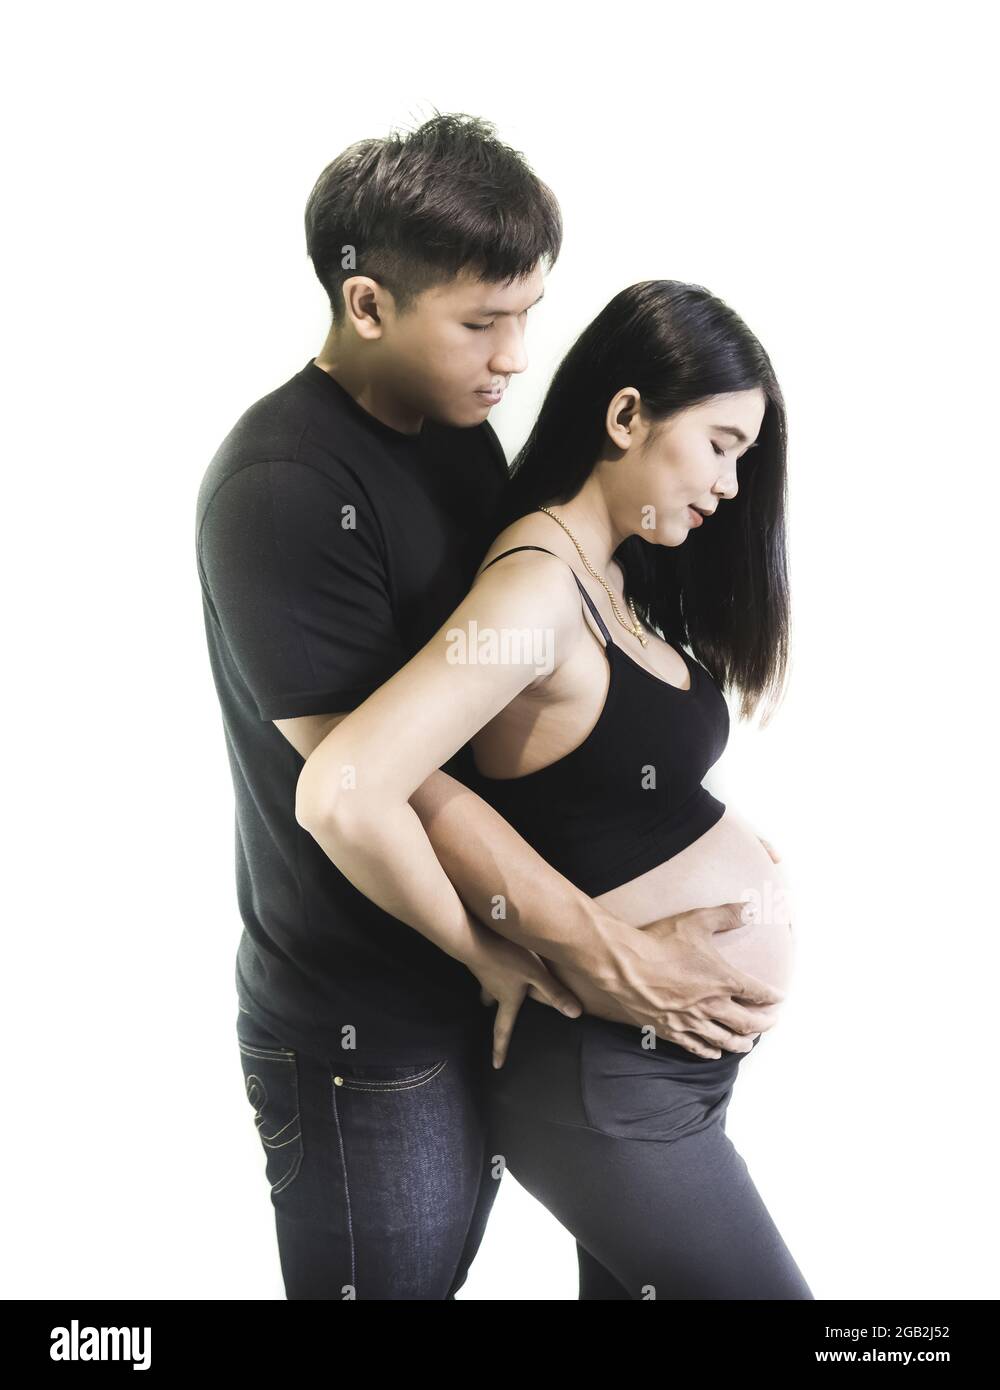 Jeune couple enceinte asiatique montrant l'amour et les soins sur fond blanc. Banque D'Images